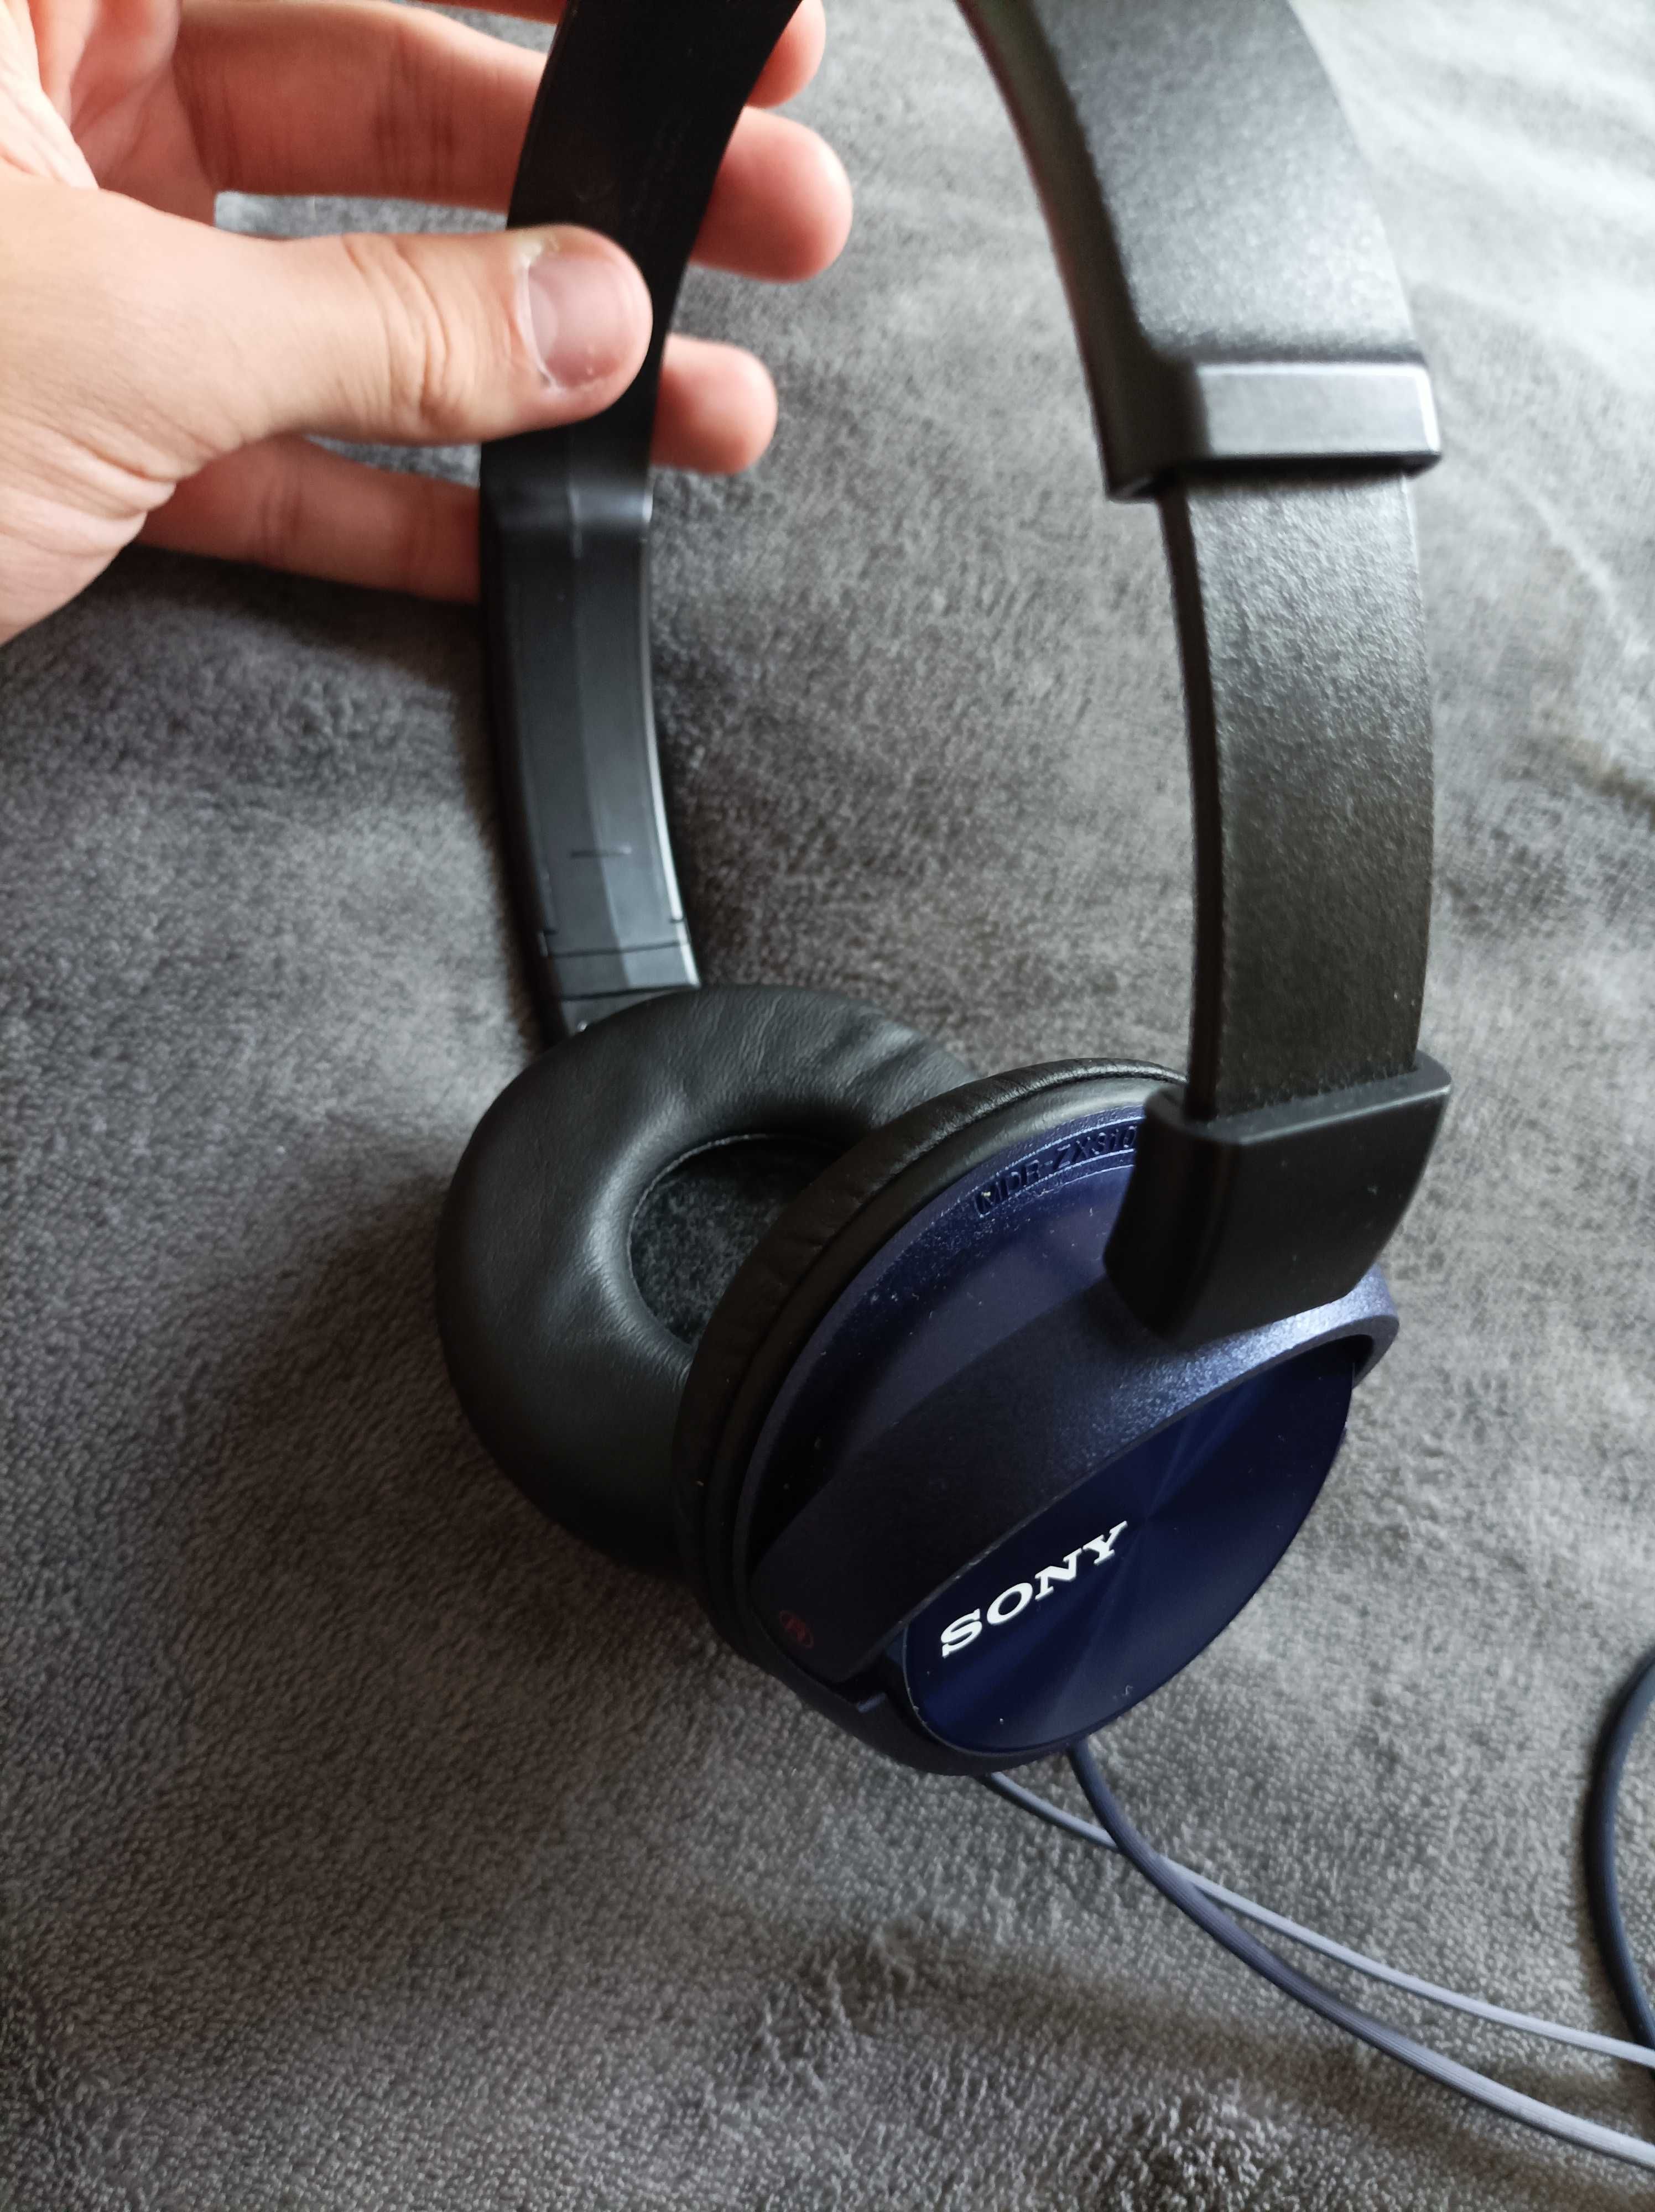 Słuchawki przewodowe Sony